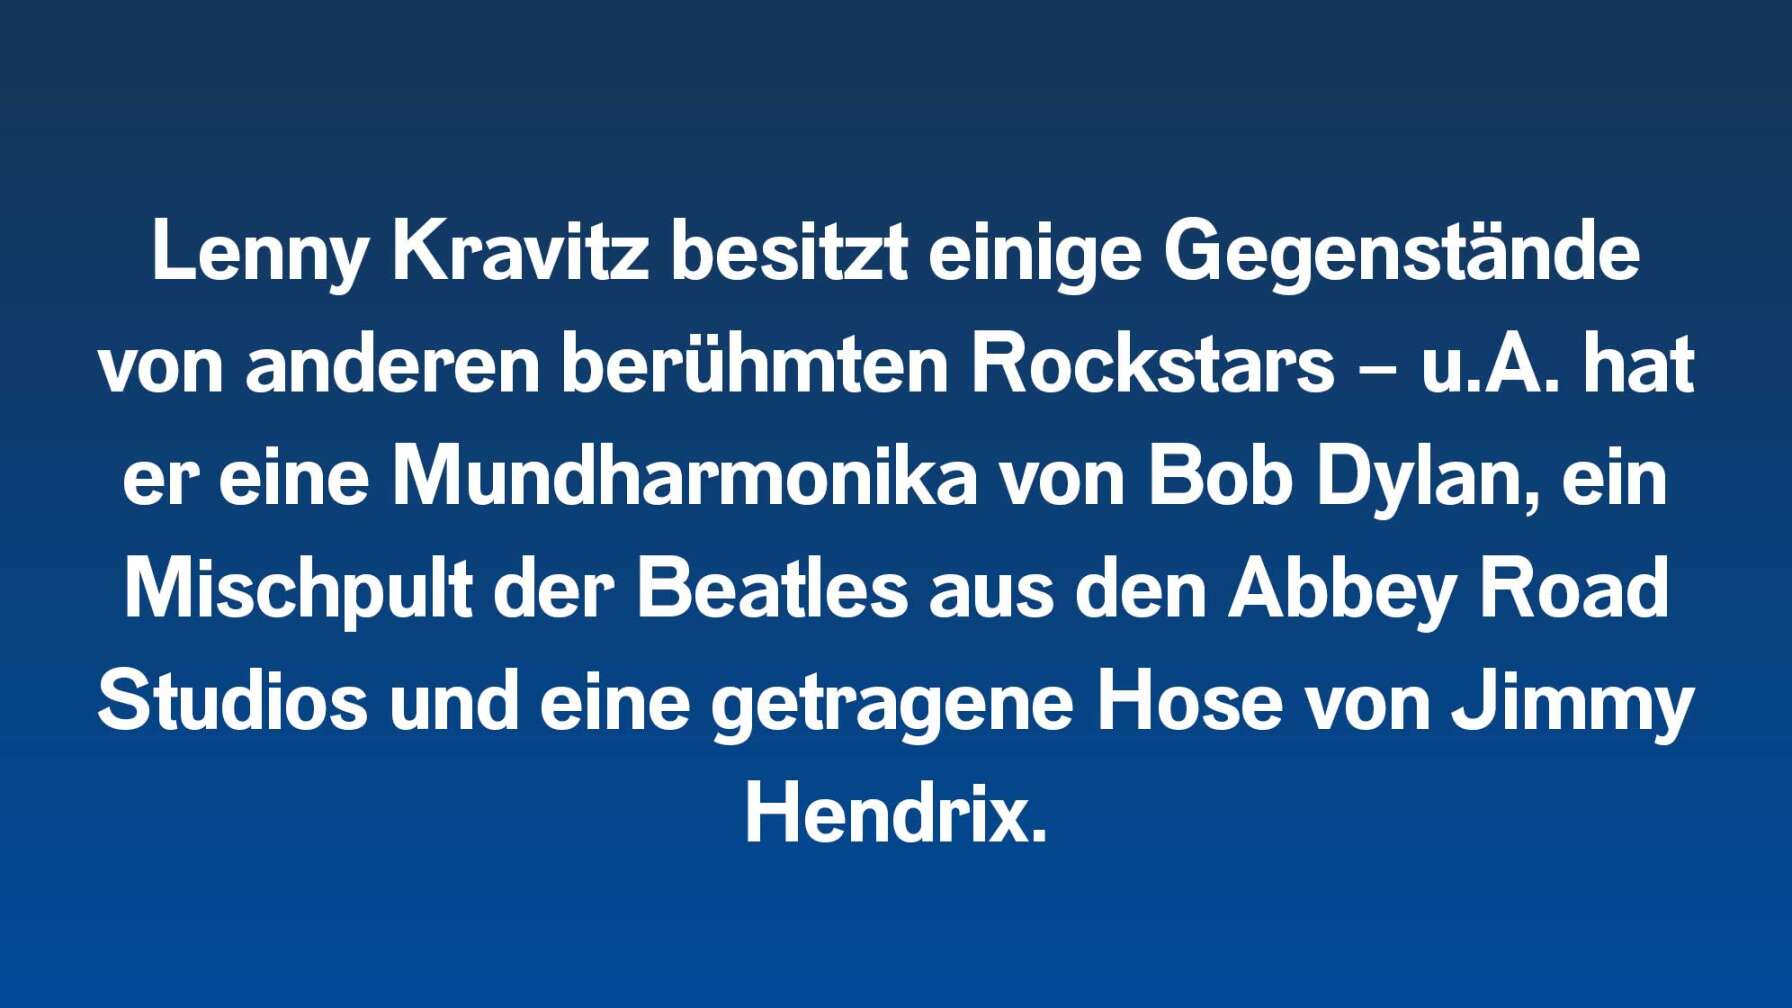 Lenny Kravitz besitzt einige Gegenstände von anderen berühmten Rockstars – u.A. hat er eine Mundharmonika von Bob Dylan, ein  Mischpult der Beatles aus den Abbey Road Studios und eine getragene Hose von Jimmy Hendrix.